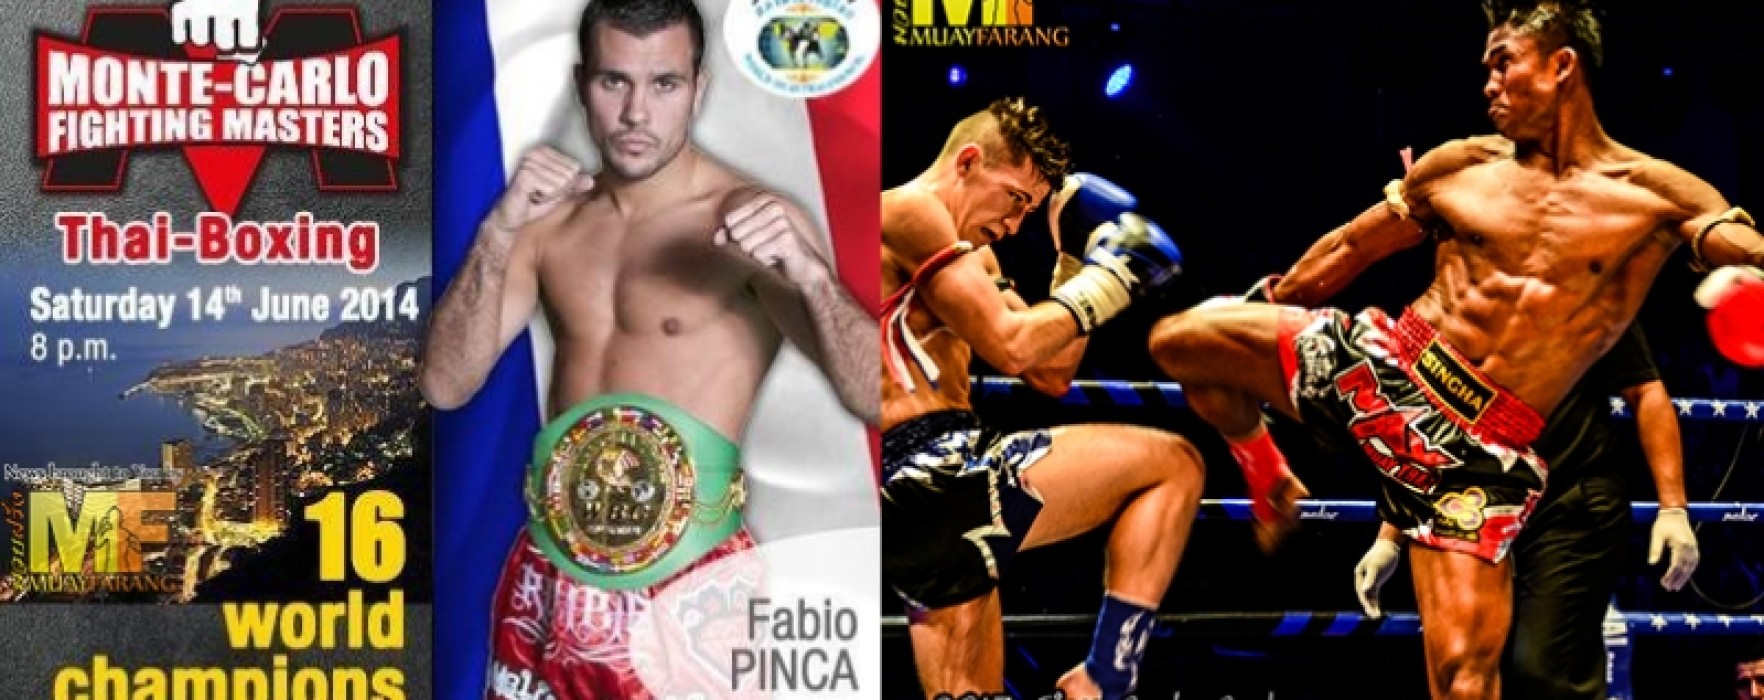 Buakaw vs Fabio Pinca al Monte-Carlo Fighting Masters 14 Giugno 2014